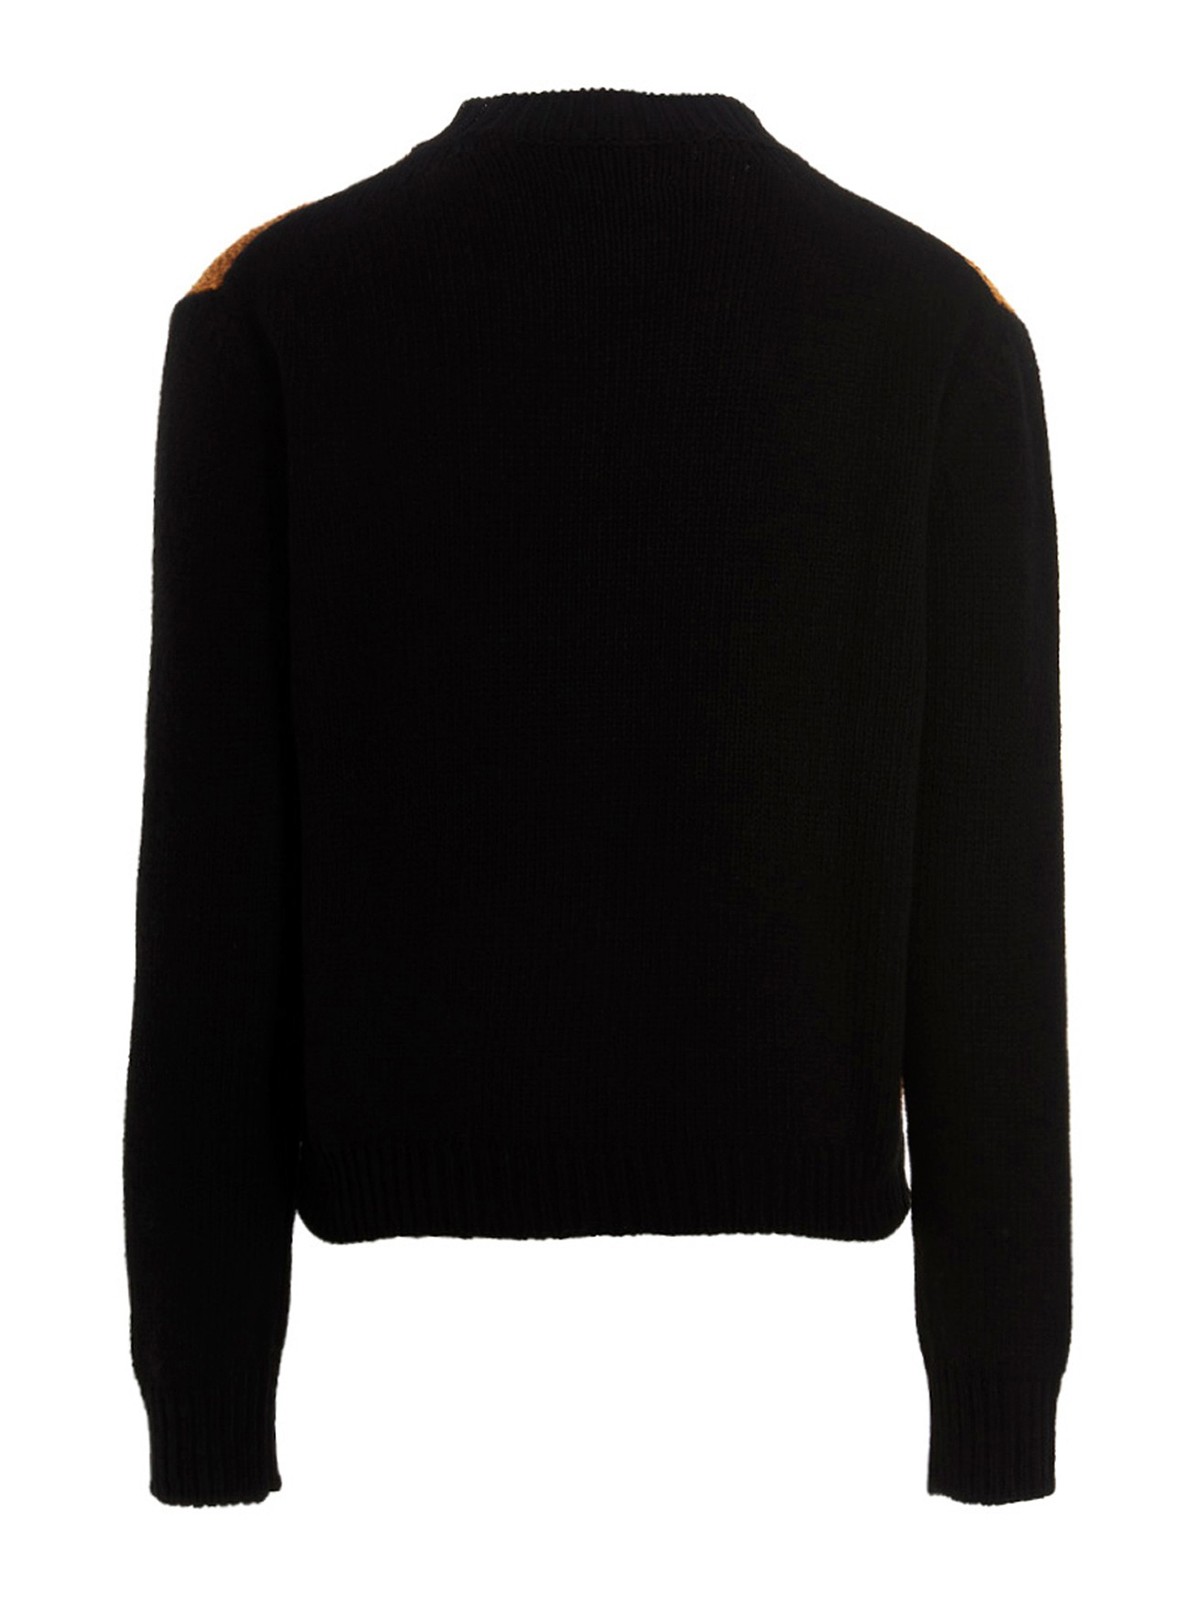 Shop Marni X Carhartt Sweater In Multicolour